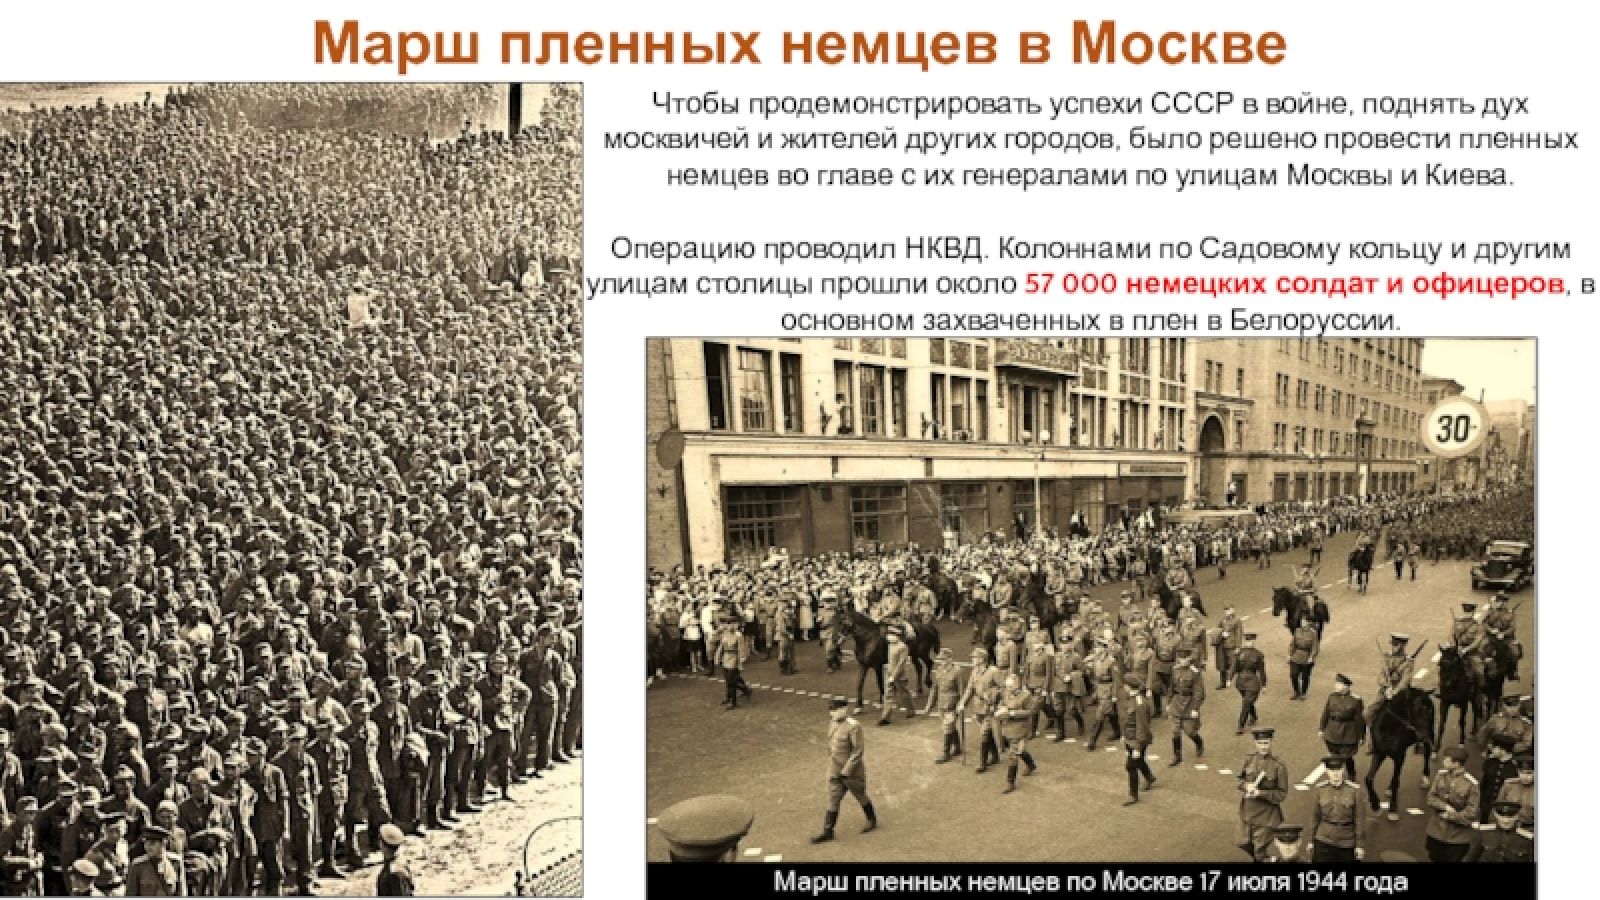 1 июля 1944. 17 Июля 1944 года марш пленных немцев по Москве. Марш пленных в Москве 1944 немцев. Пленные немцы в Москве 1944. Парад пленных немцев в Москве 1944.